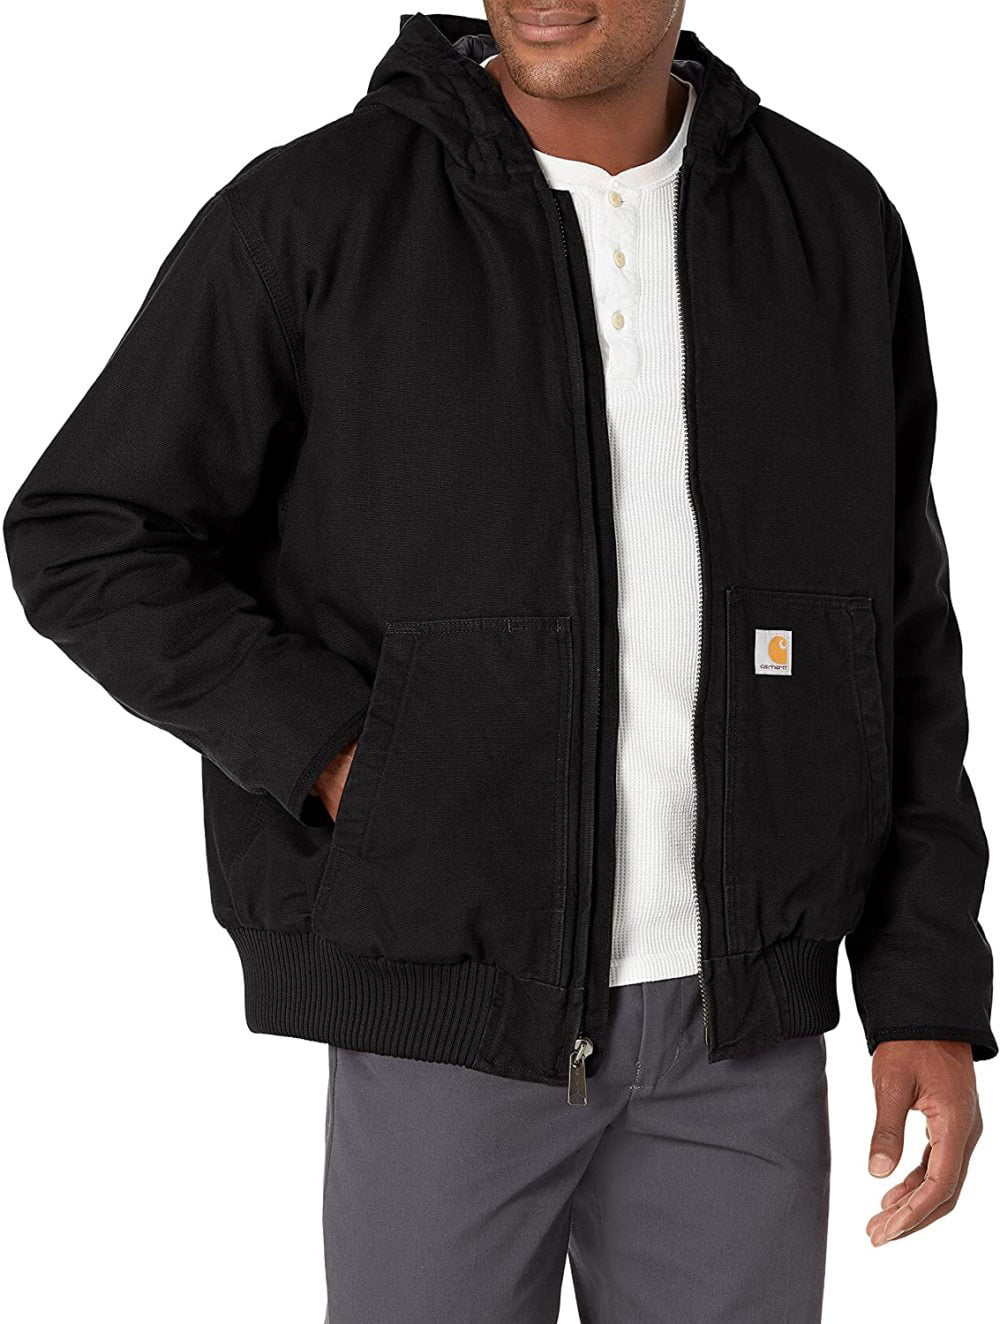 Outerwear Coats & Jackets Regular and Big & Tall Sizes Carhartt mens ...